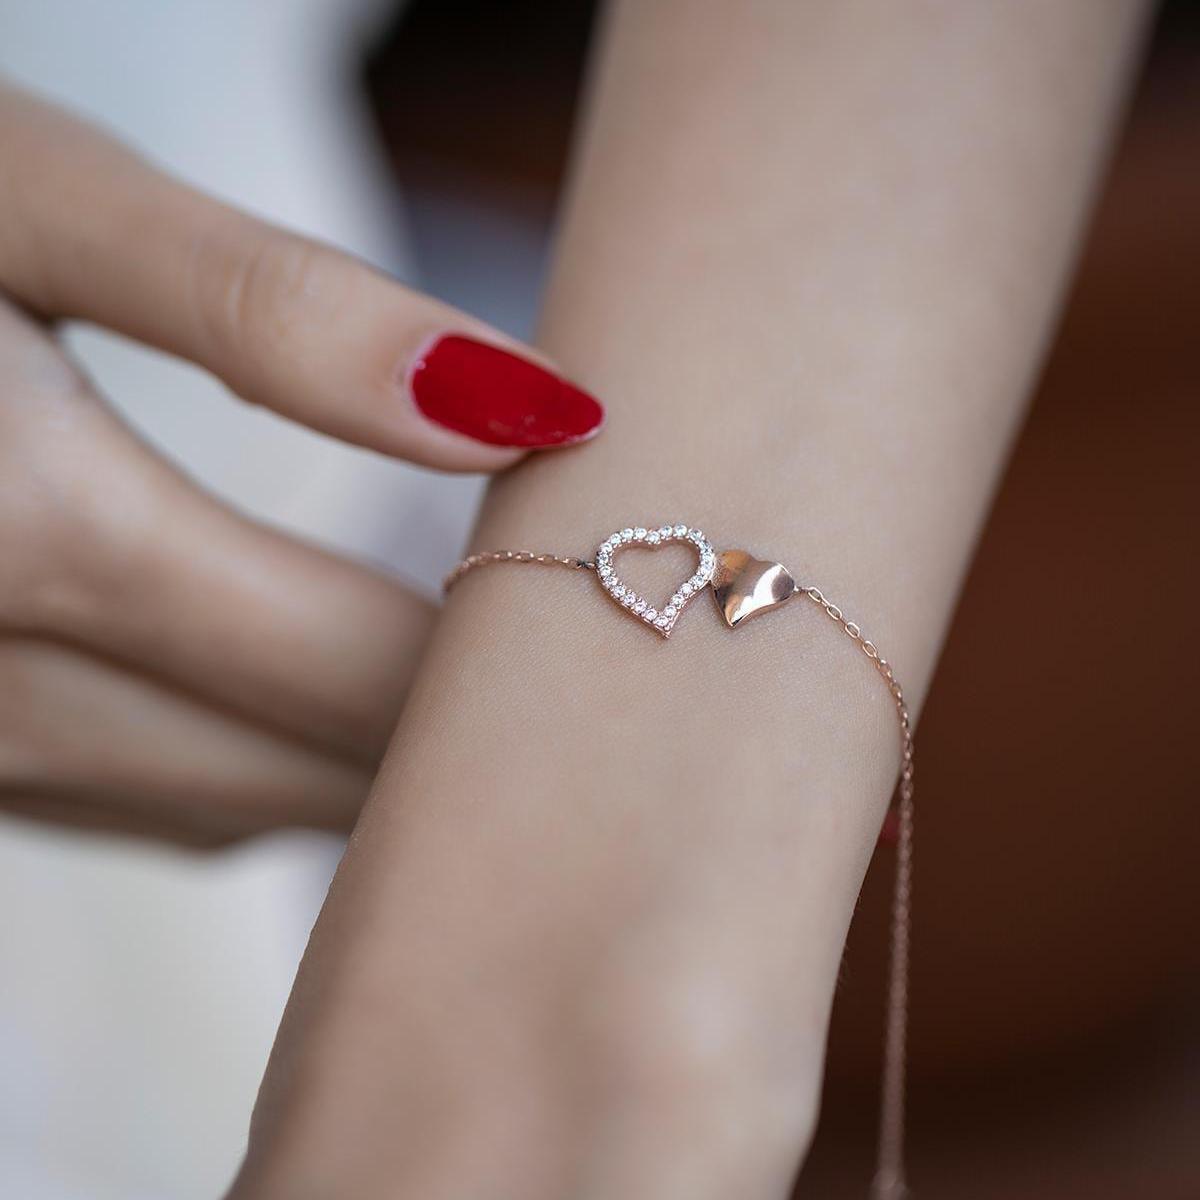 Heart Charm Bracelet • Heart Bracelet Silver • Silver Heart Bracelet - Trending Silver Gifts